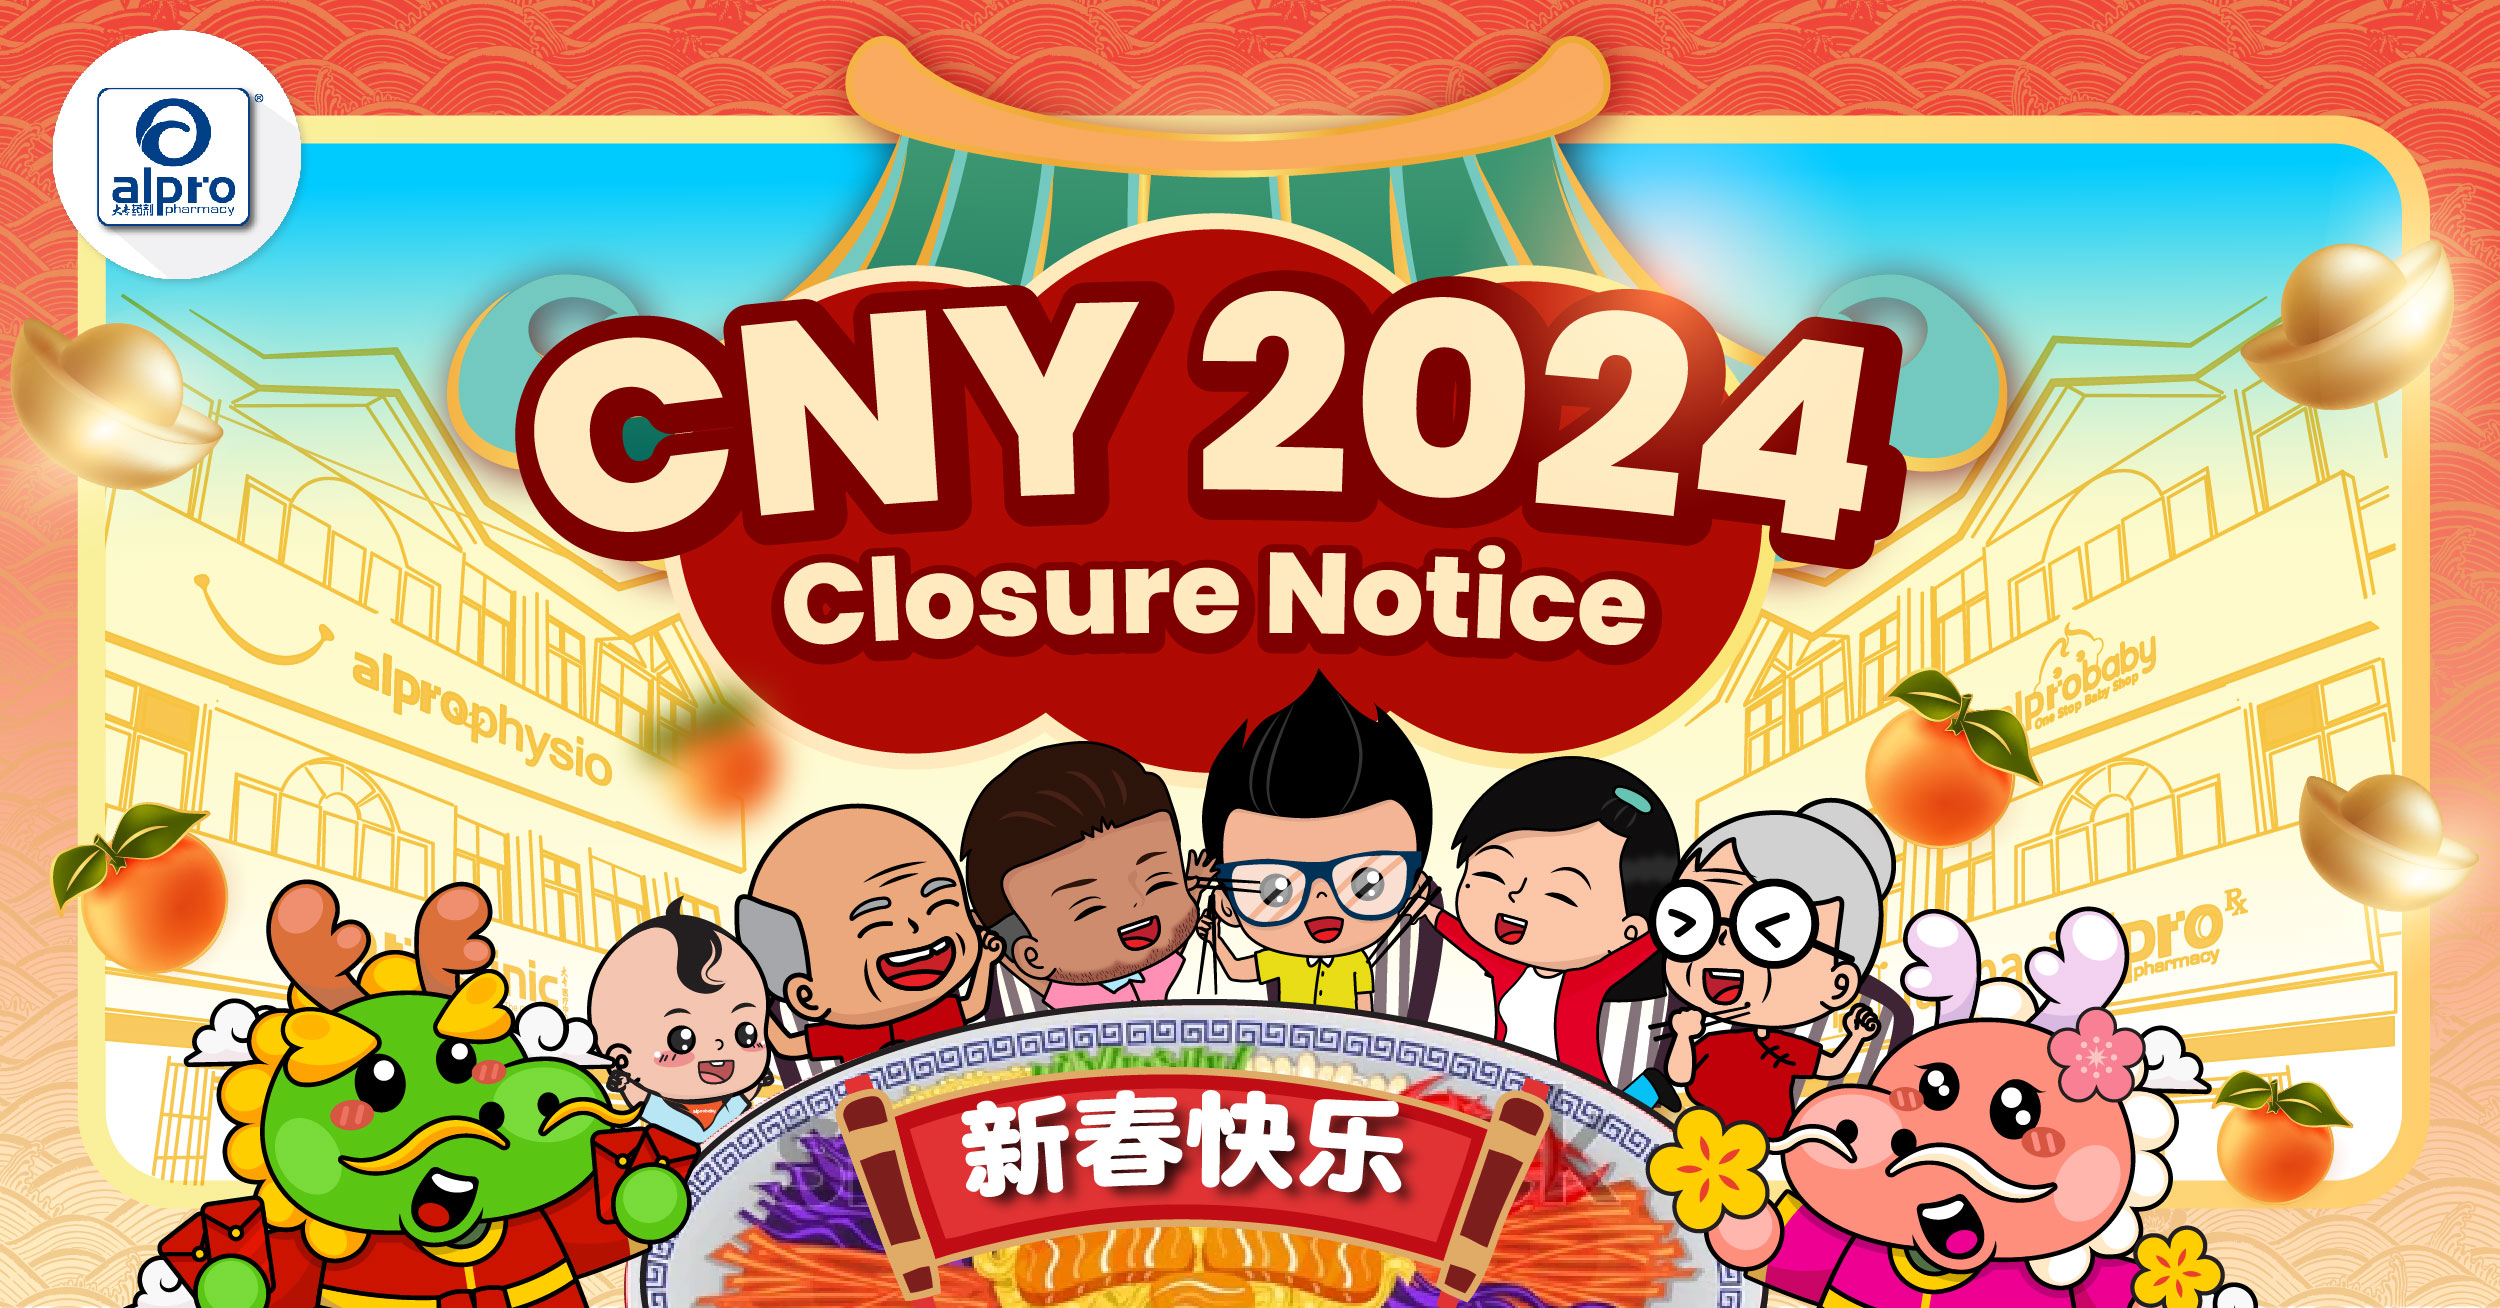 CNY Closure Notice 2024 Alpro Pharmacy